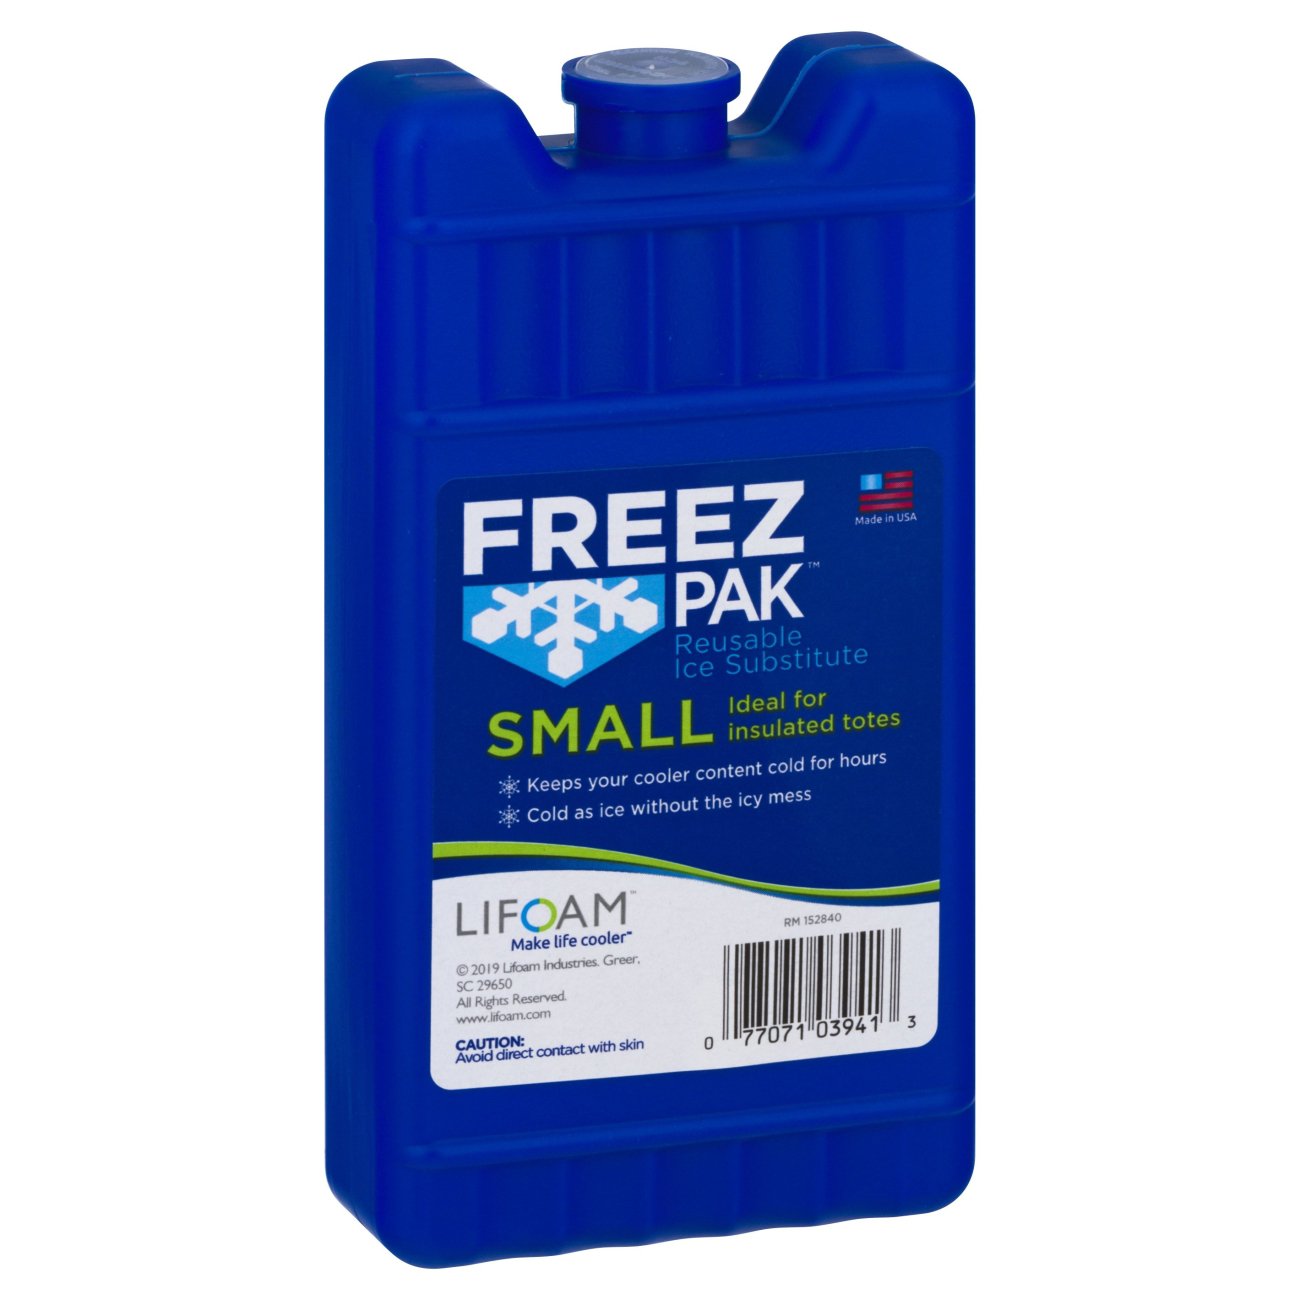 Lifoam Freez Pak - Shop Coolers & Ice Packs at H-E-B